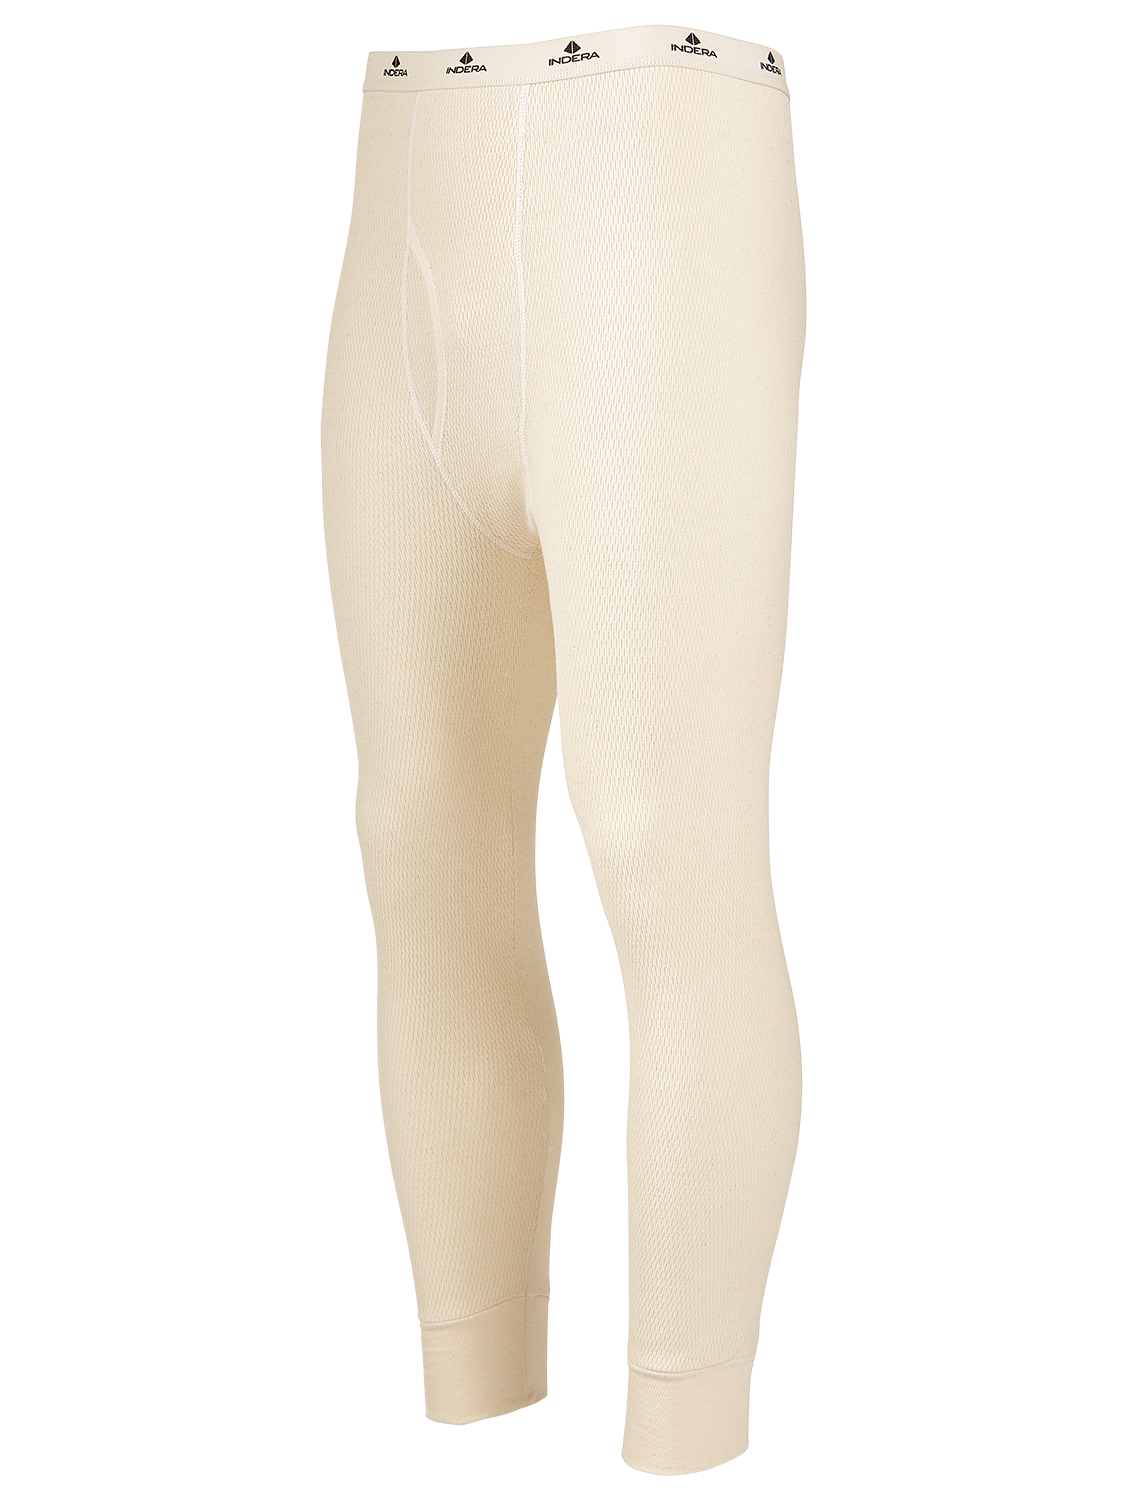 Details about   Jako Underwear Comfort 2.0 Thermal Underwear Unisex 6455-6555-KS 